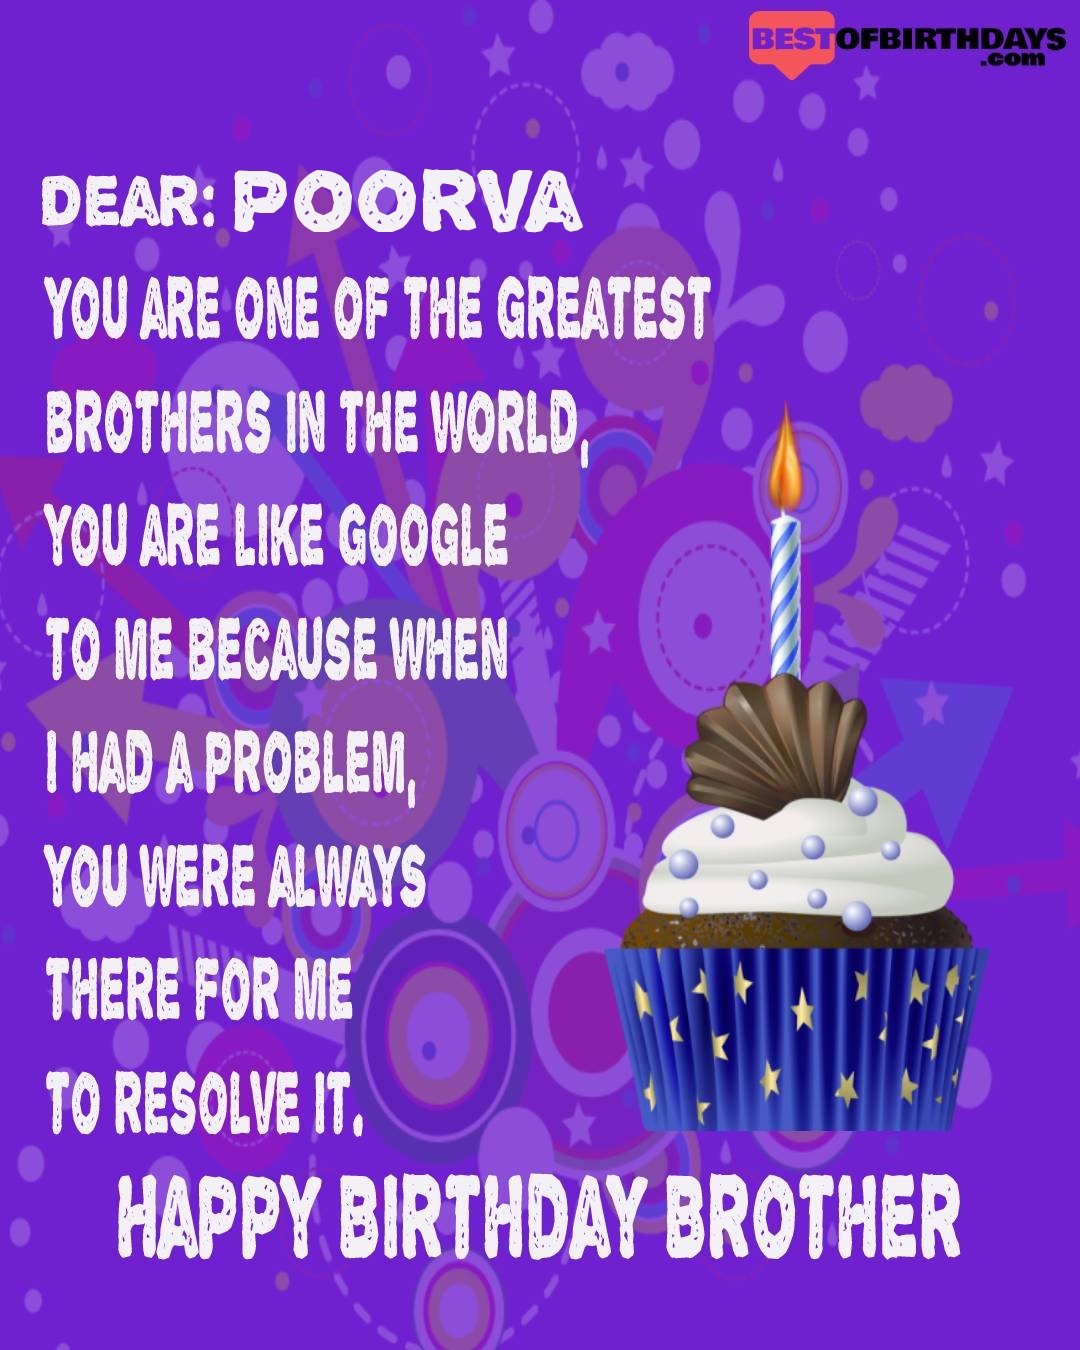 Happy birthday poorva bhai brother bro